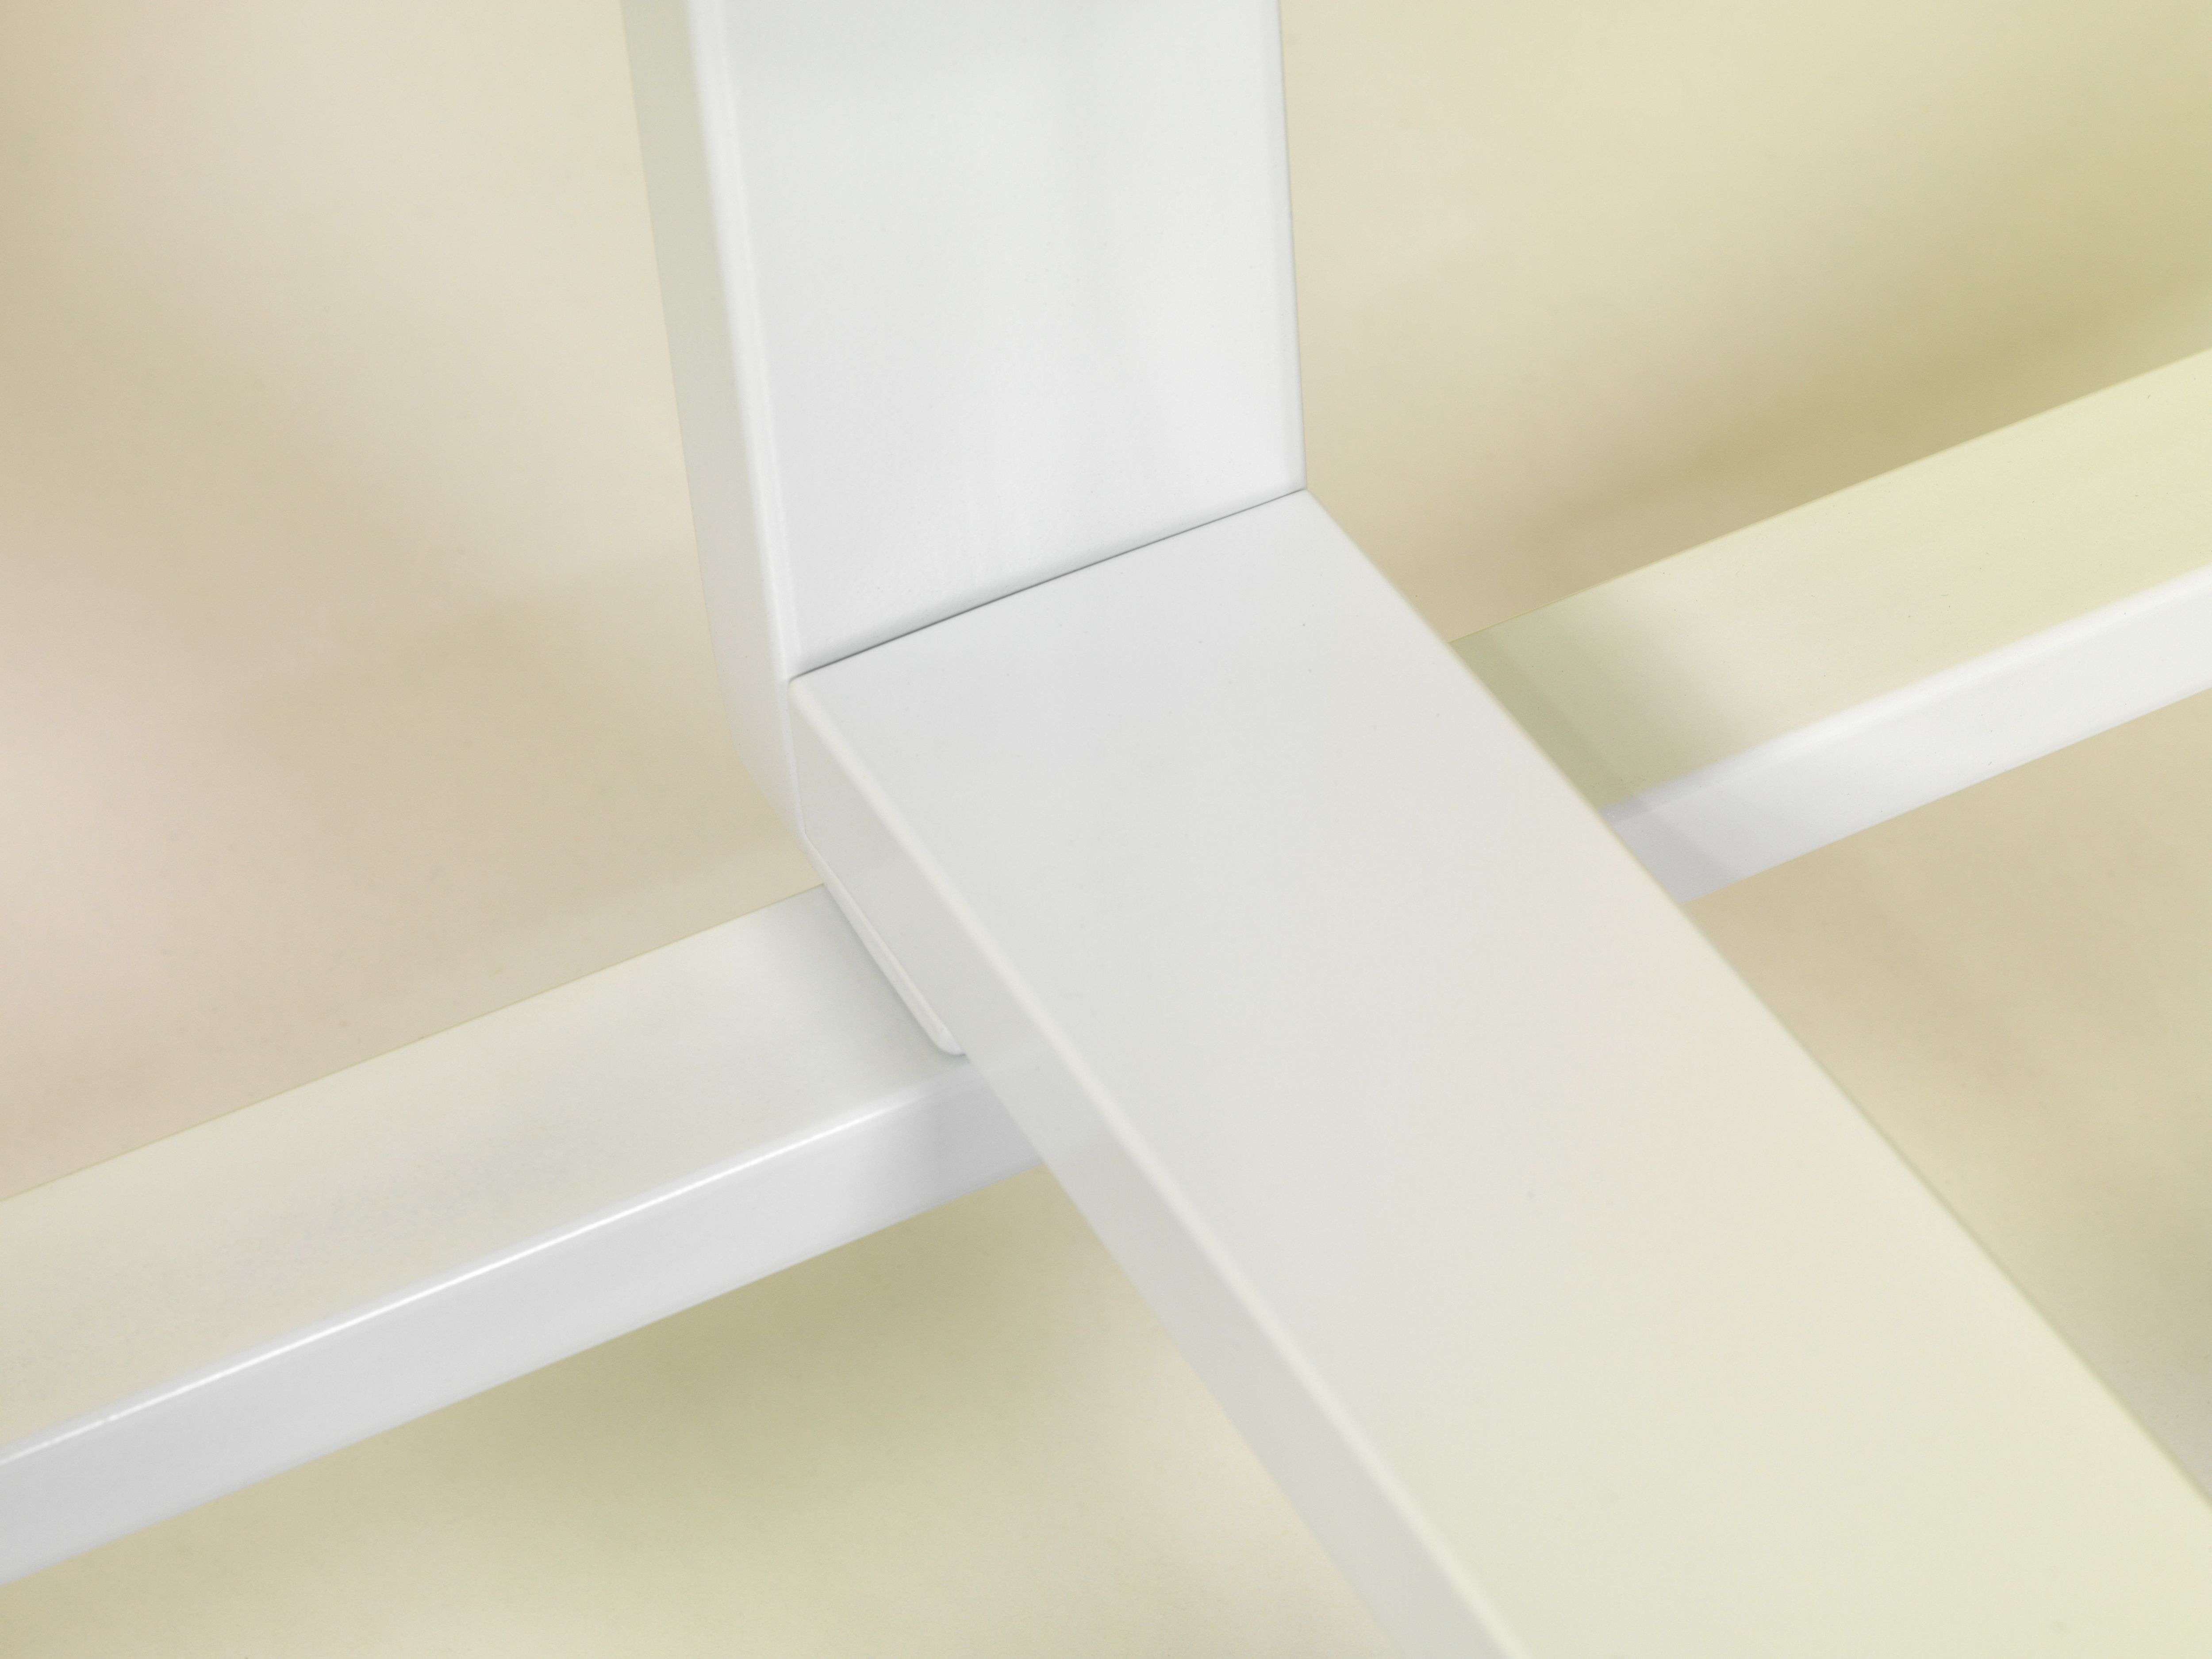 Magnetische doppelseitige Drehtafel Whiteboard für intensive Nutzung | HxB 100x200cm | 4x Rollen | 360° drehbar und auf jeden Winkel einstellbar | Emaillierter Stahl | Weiß